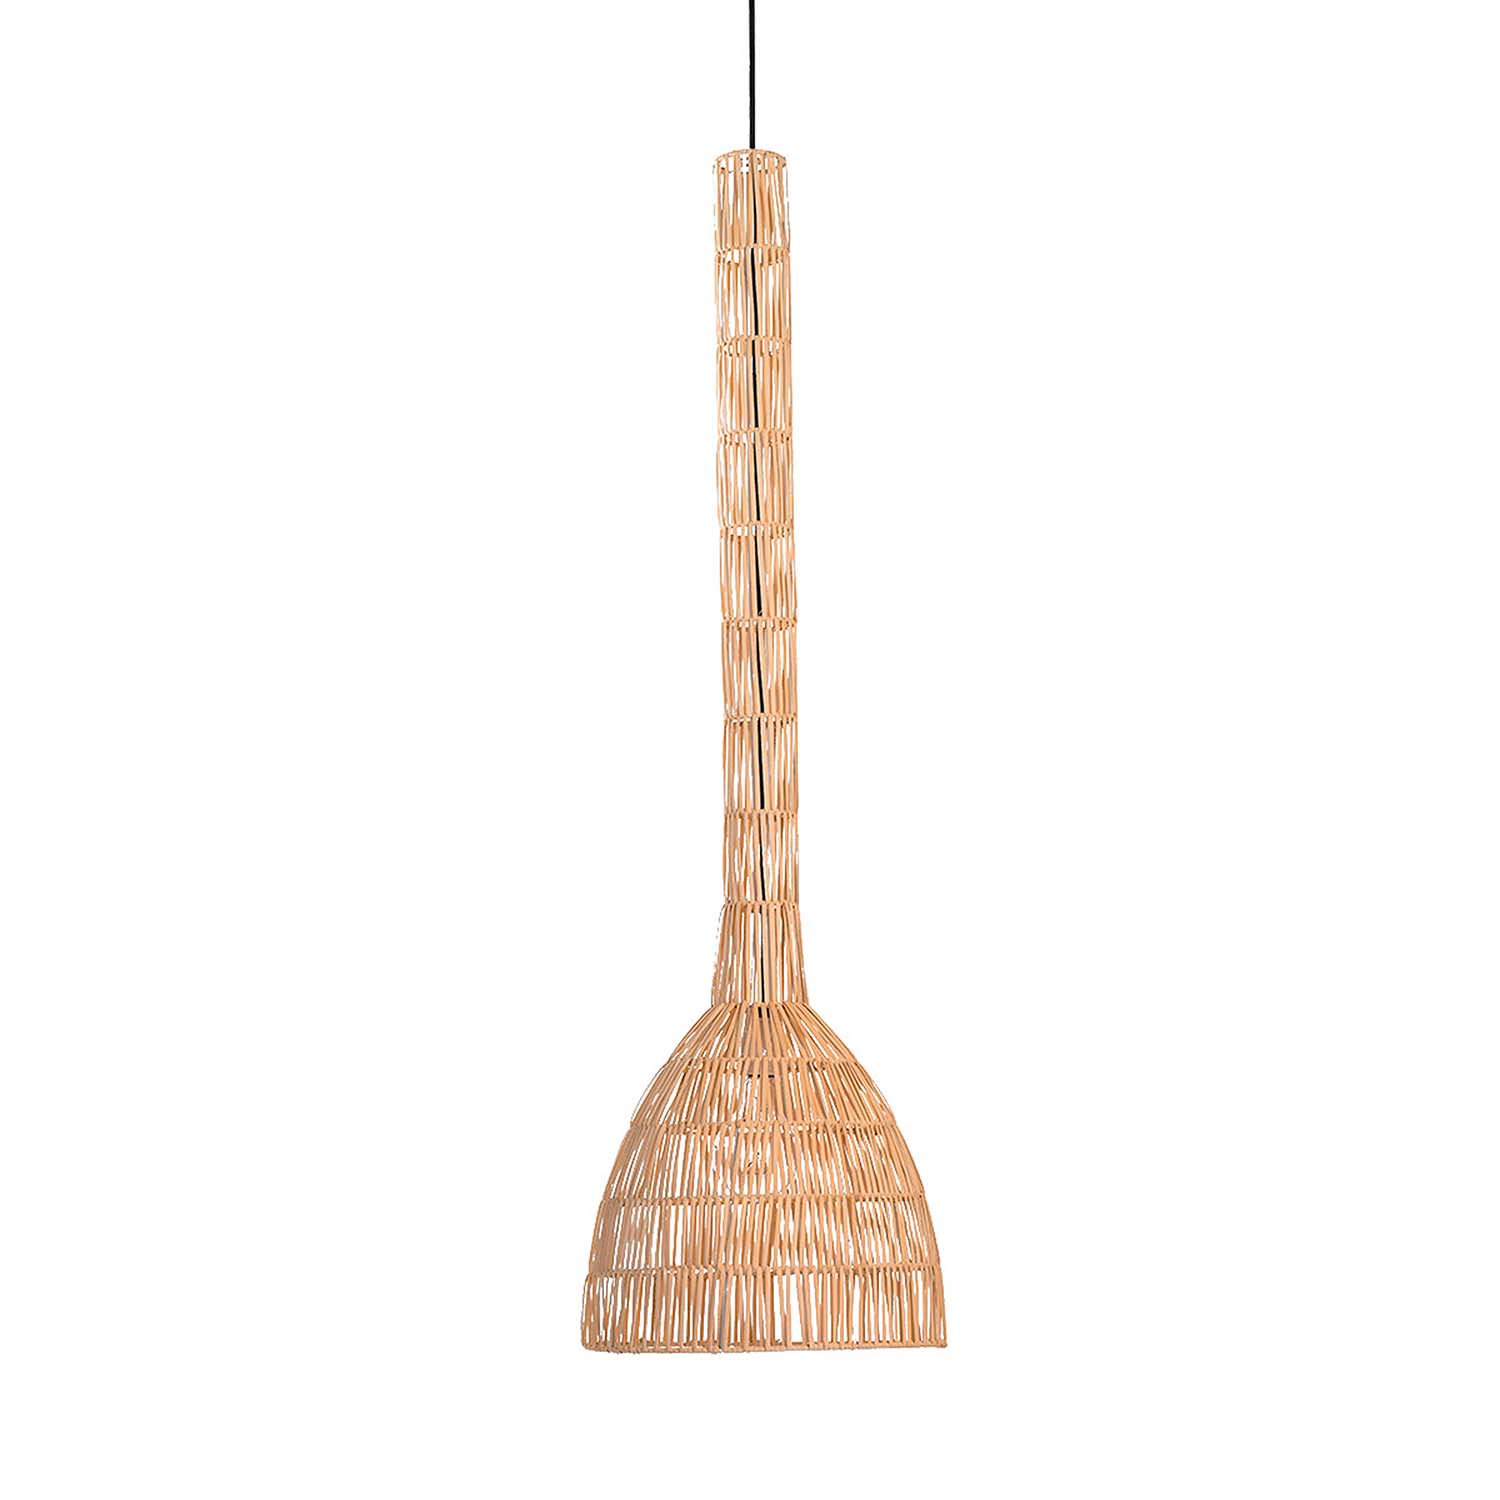 UMUT 3 - Handmade natural or black bamboo pendant light